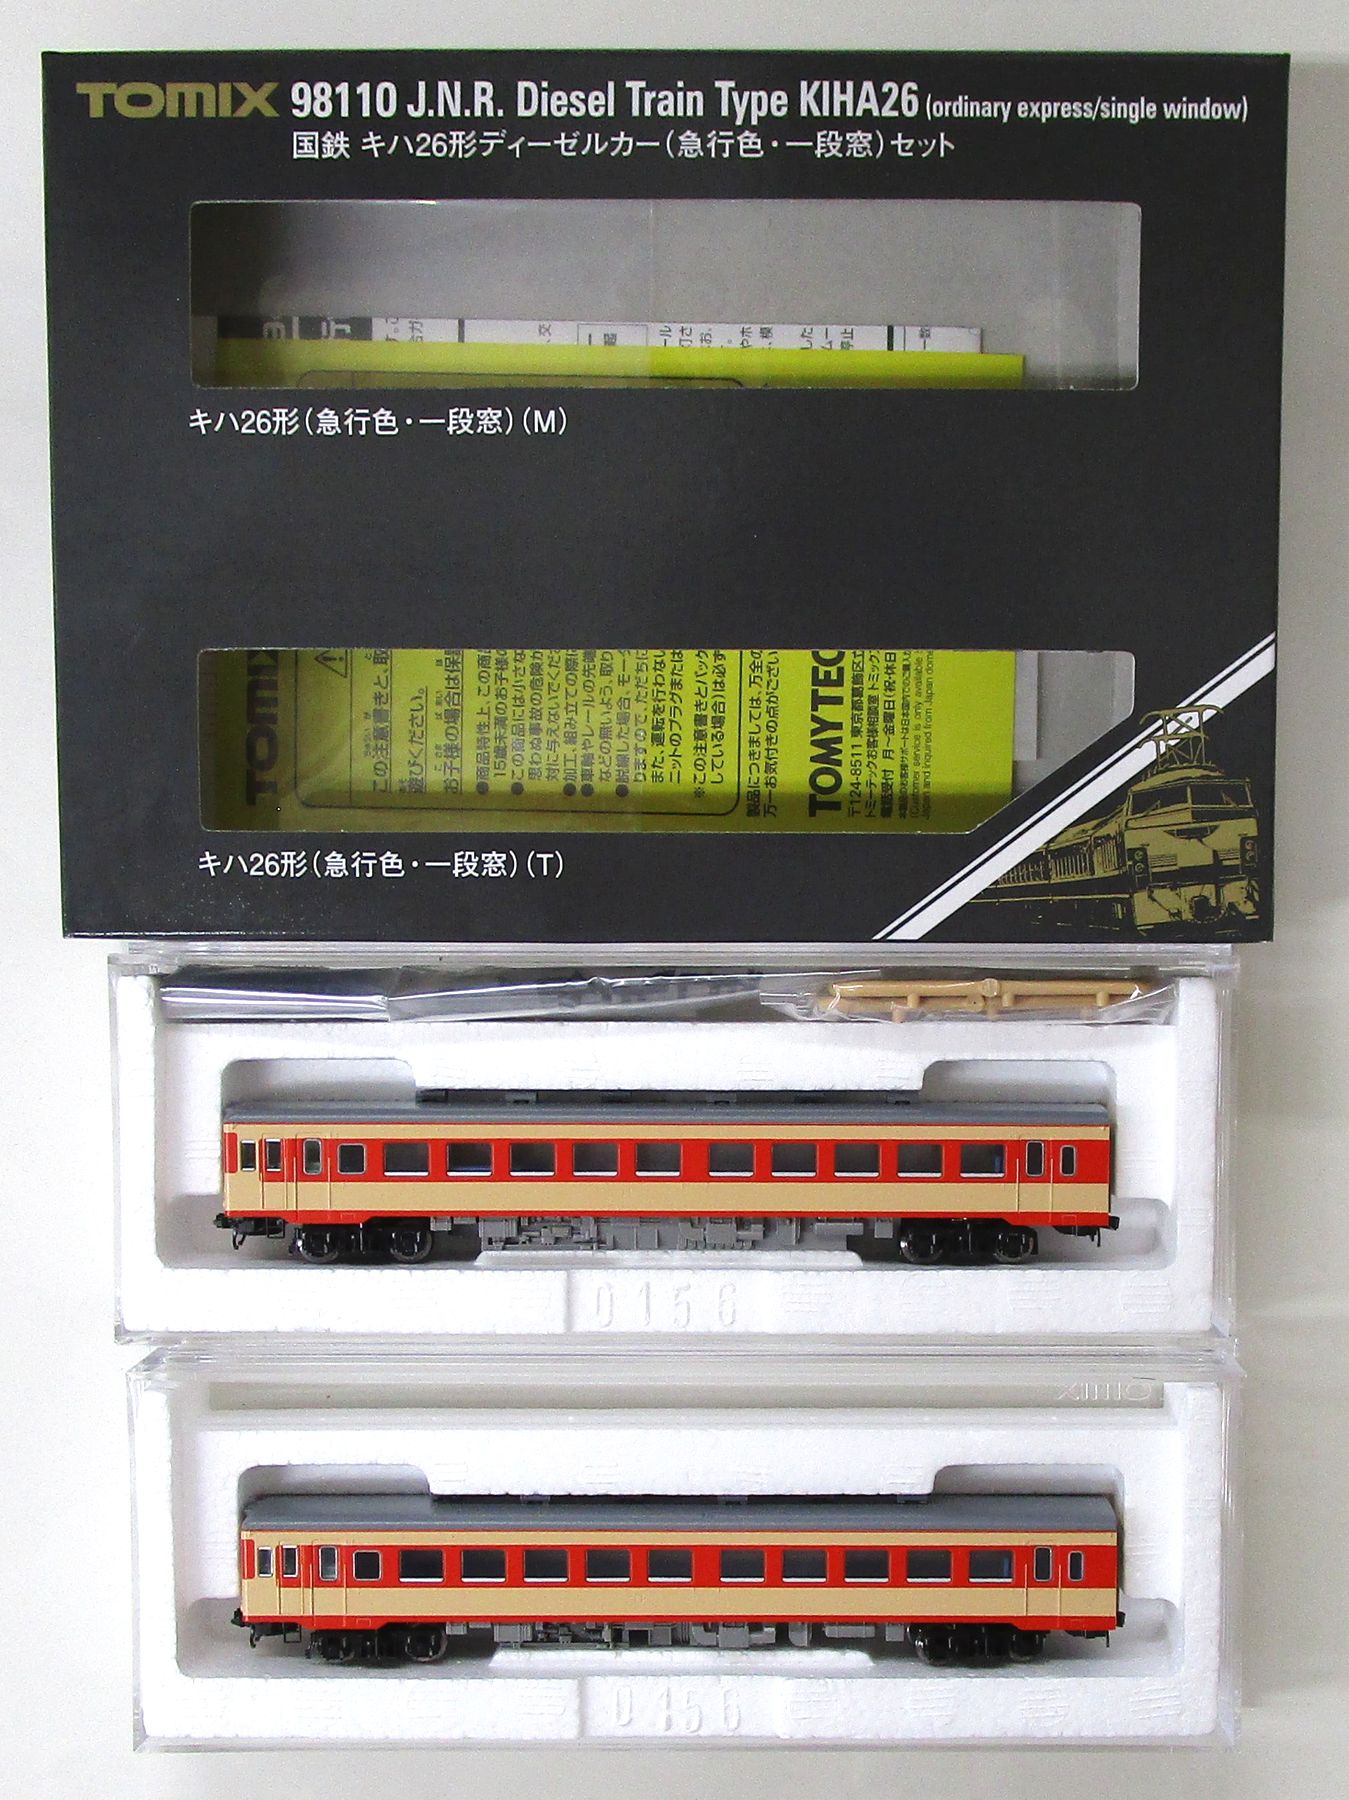 公式]鉄道模型(98110国鉄 キハ26形ディーゼルカー (急行色・一段窓) 2